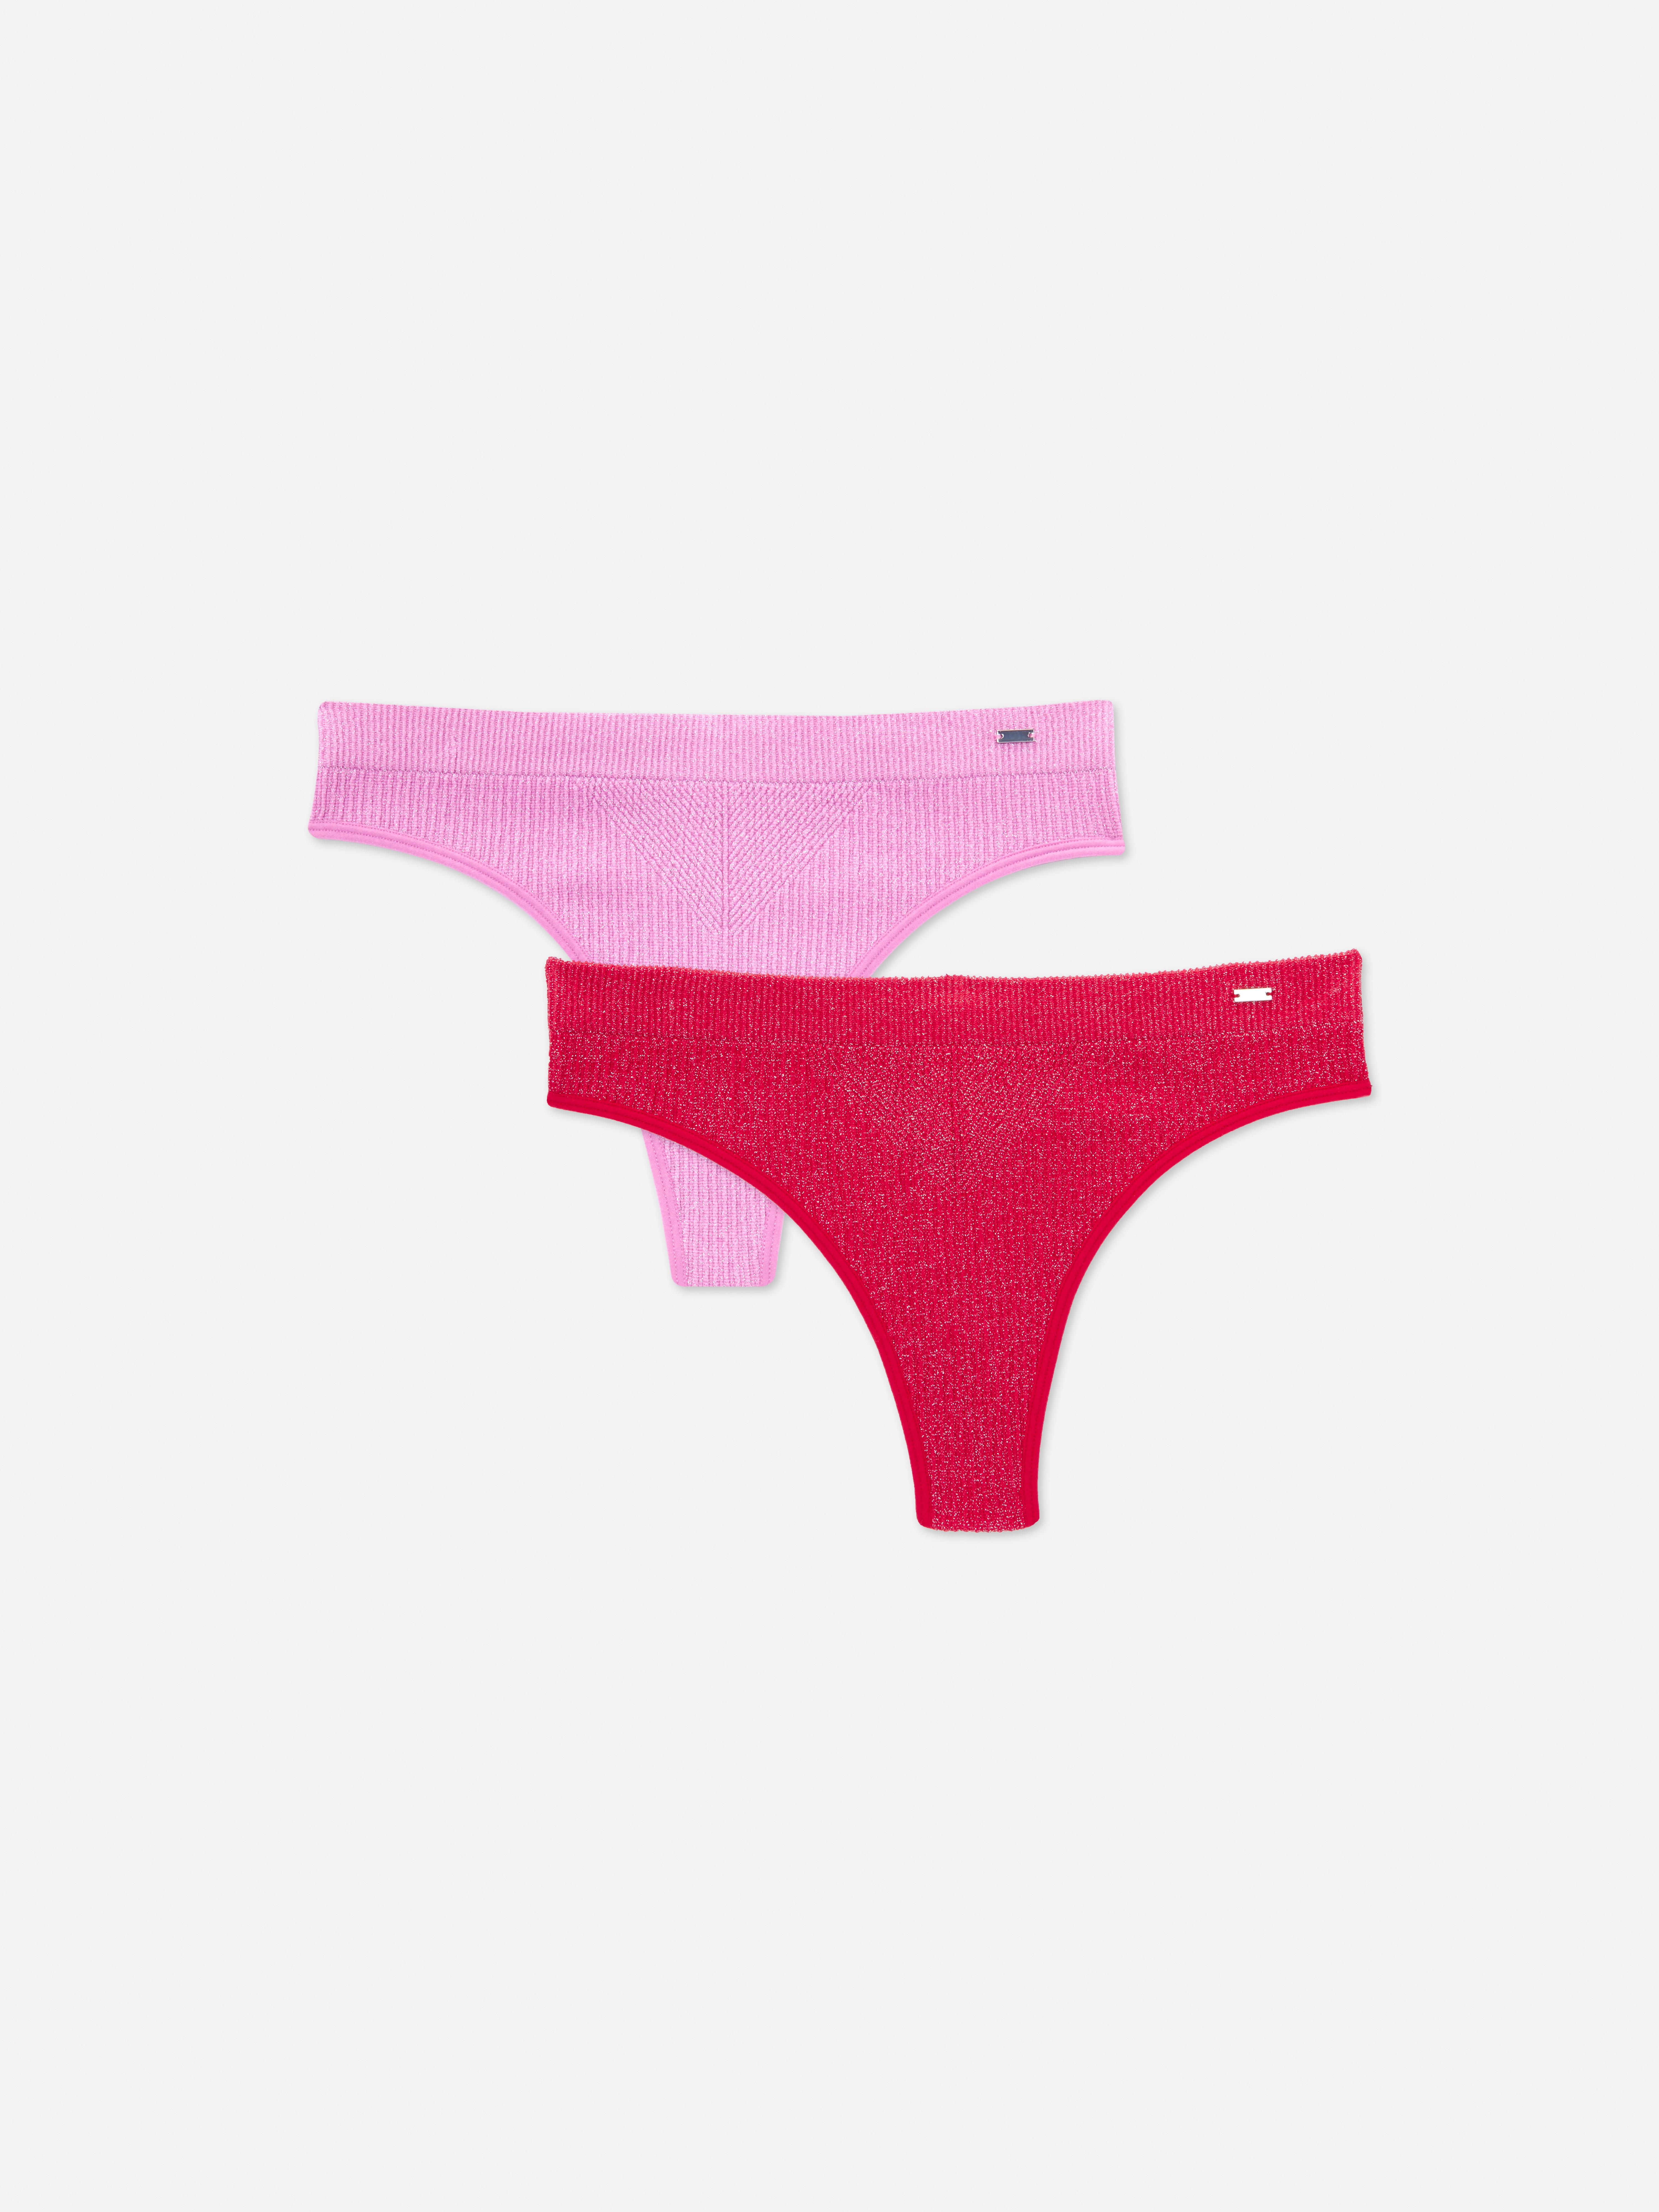 Primark Seam Free Full Briefs Knickers Ladies Women Underwear 3 Pack